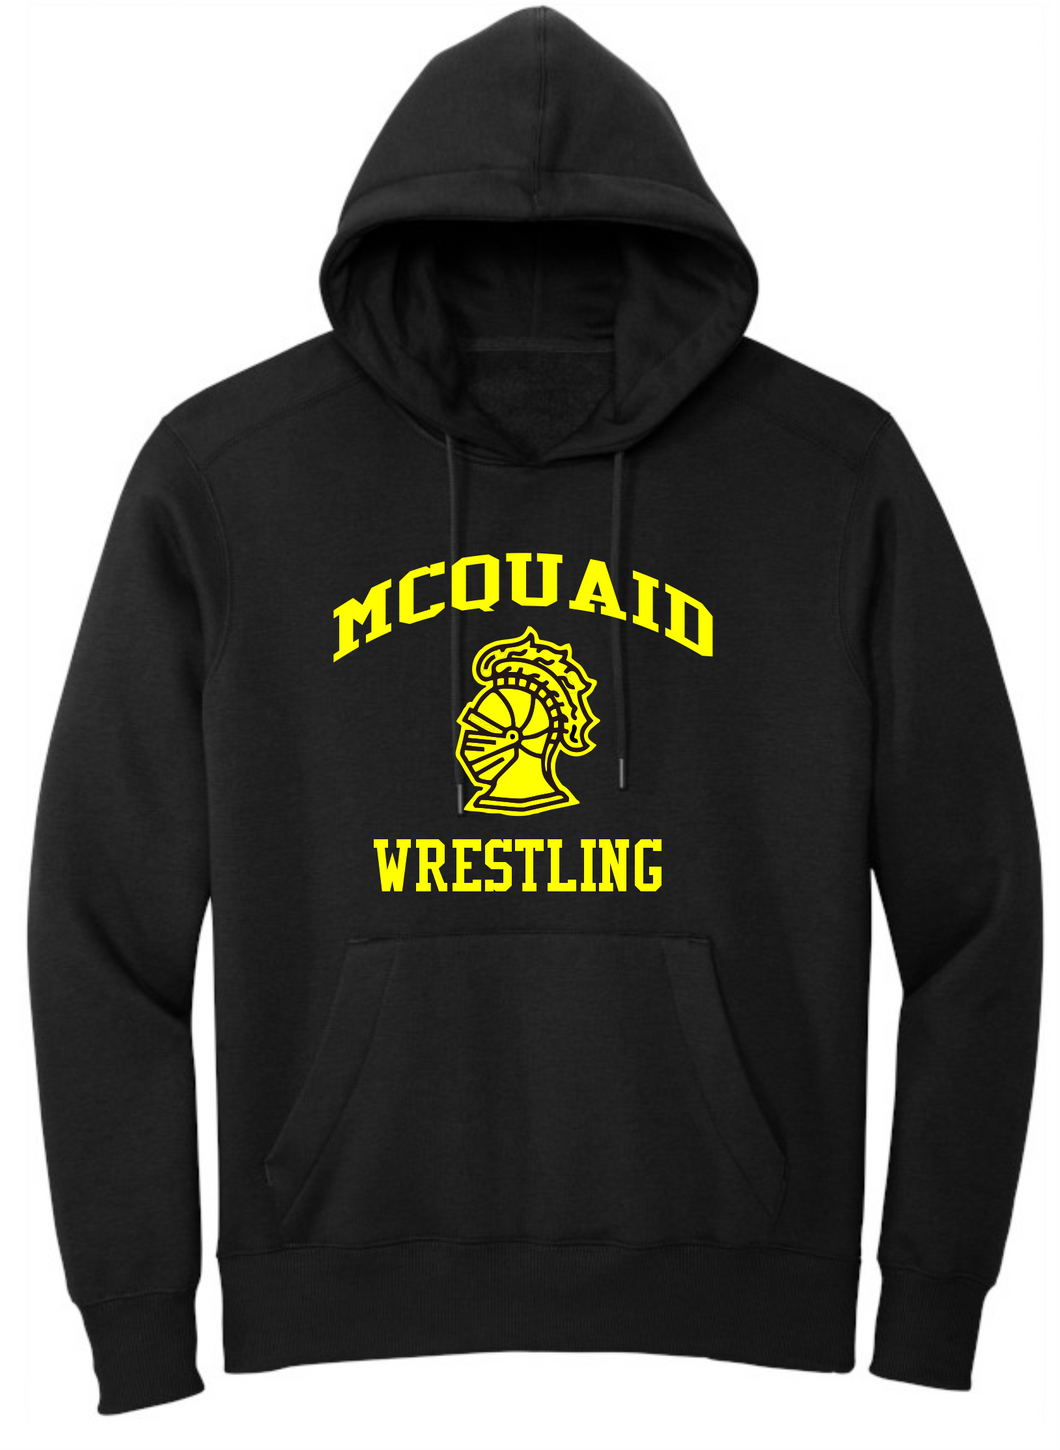 MCQUAID WRESTLING - BLACK hoodie